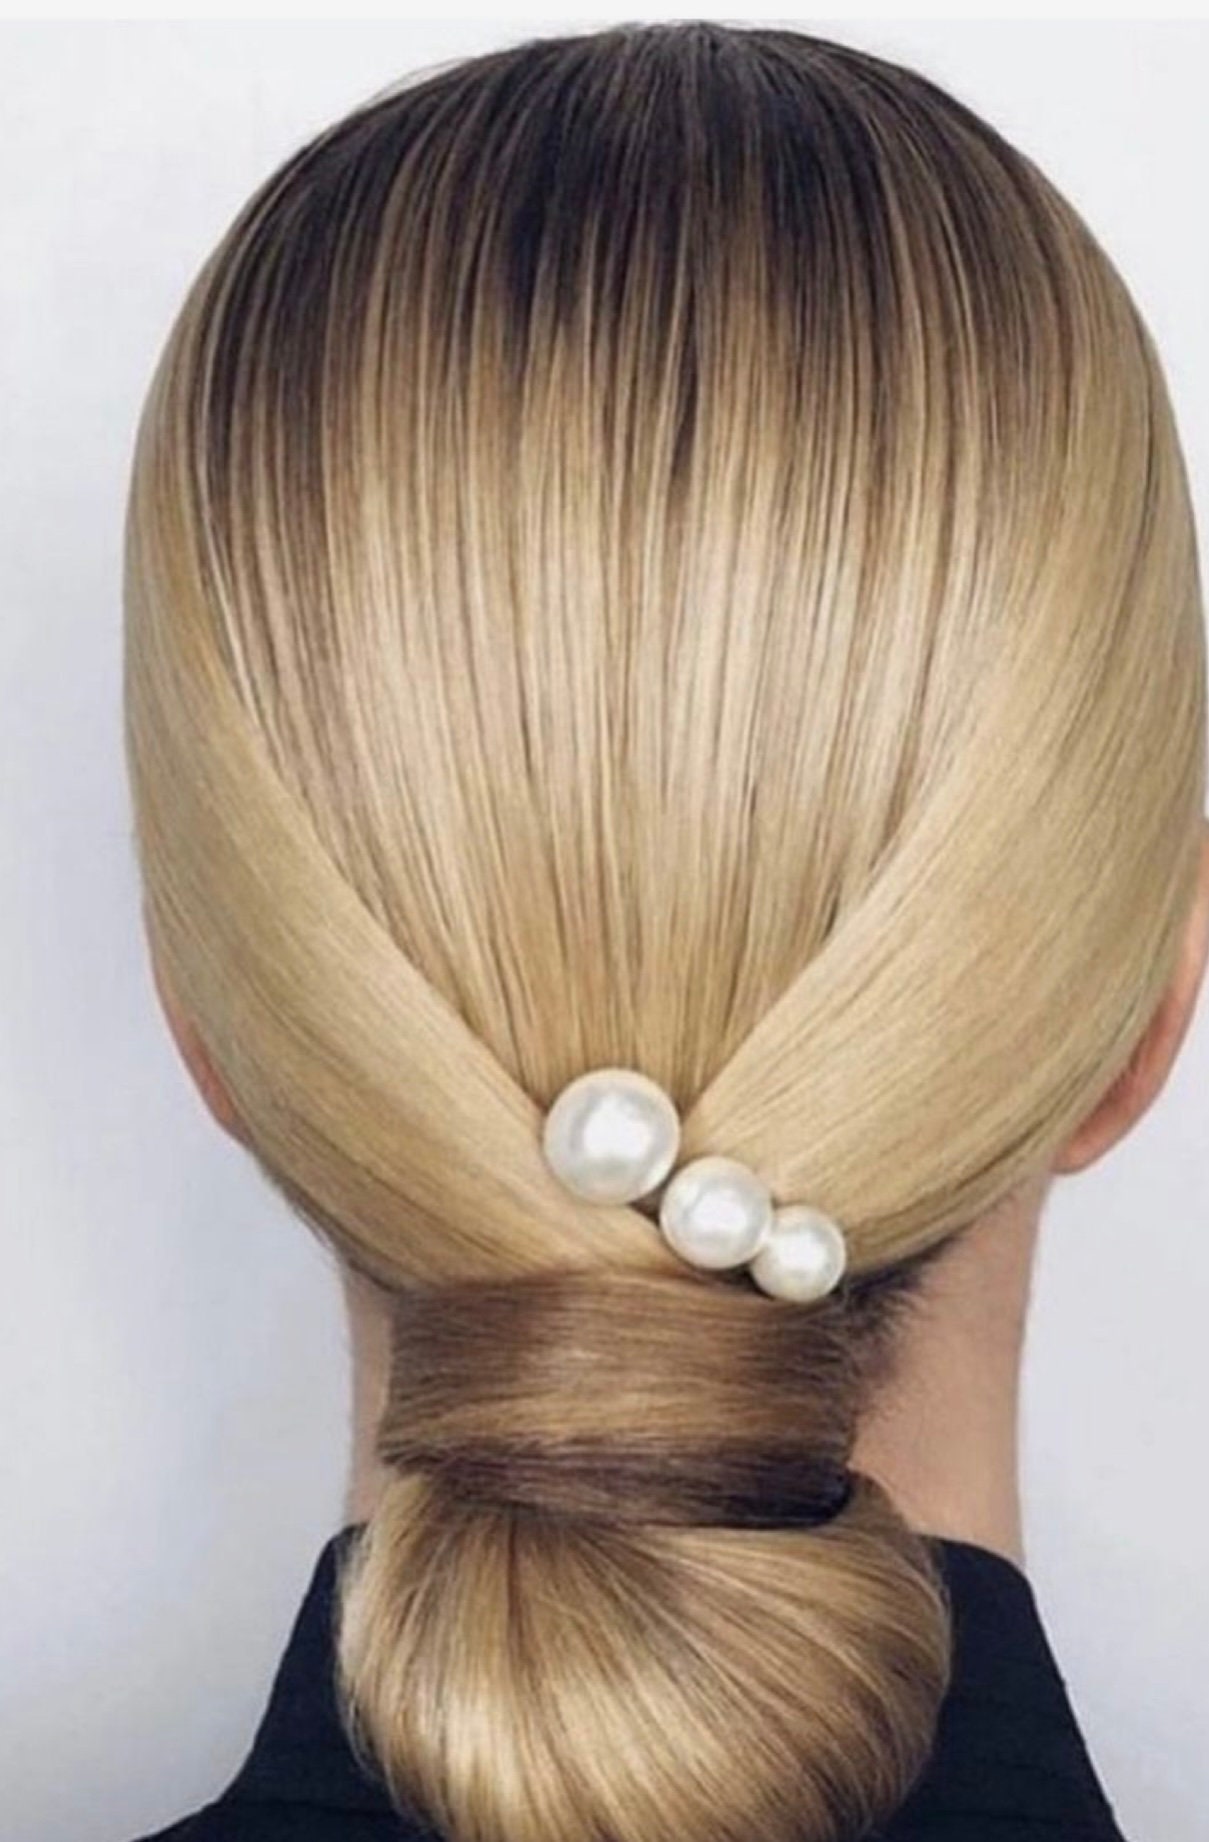 chanel hair tie  Hair accessories pearl, Hair accessories, Pearl hair pins